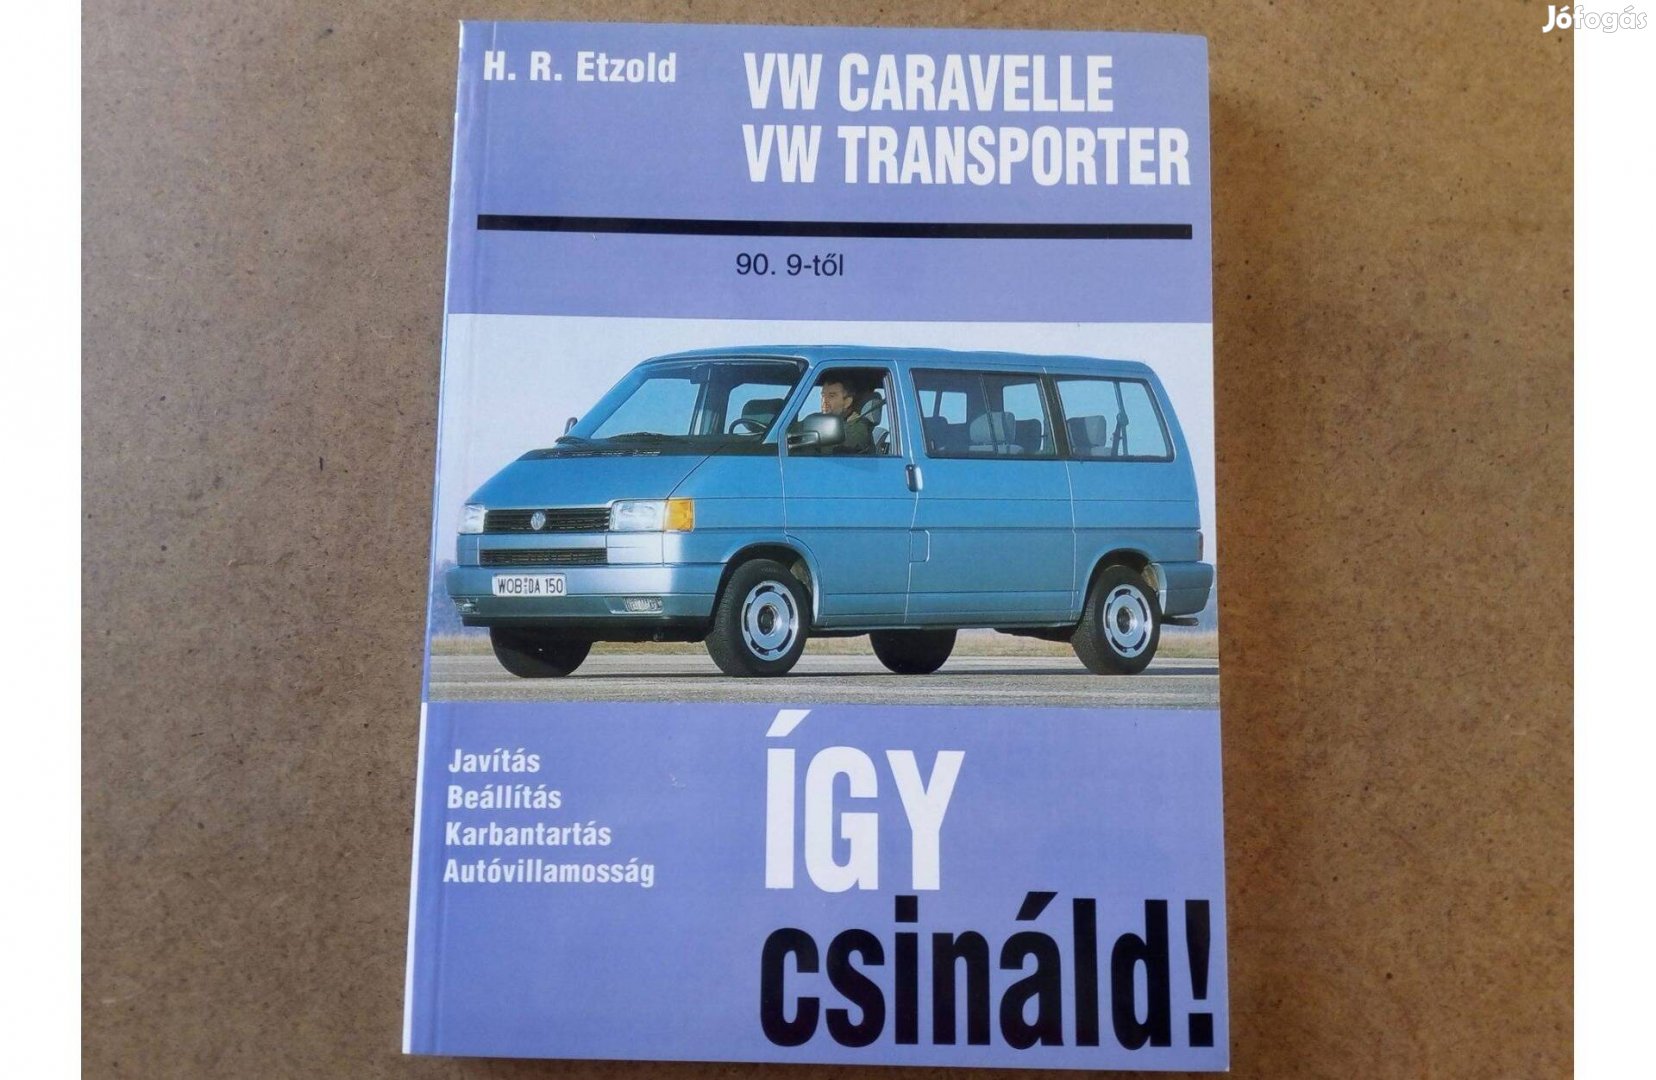 Volkswagen Vw. Transporter, Caravelle javítási karbantartási könyv